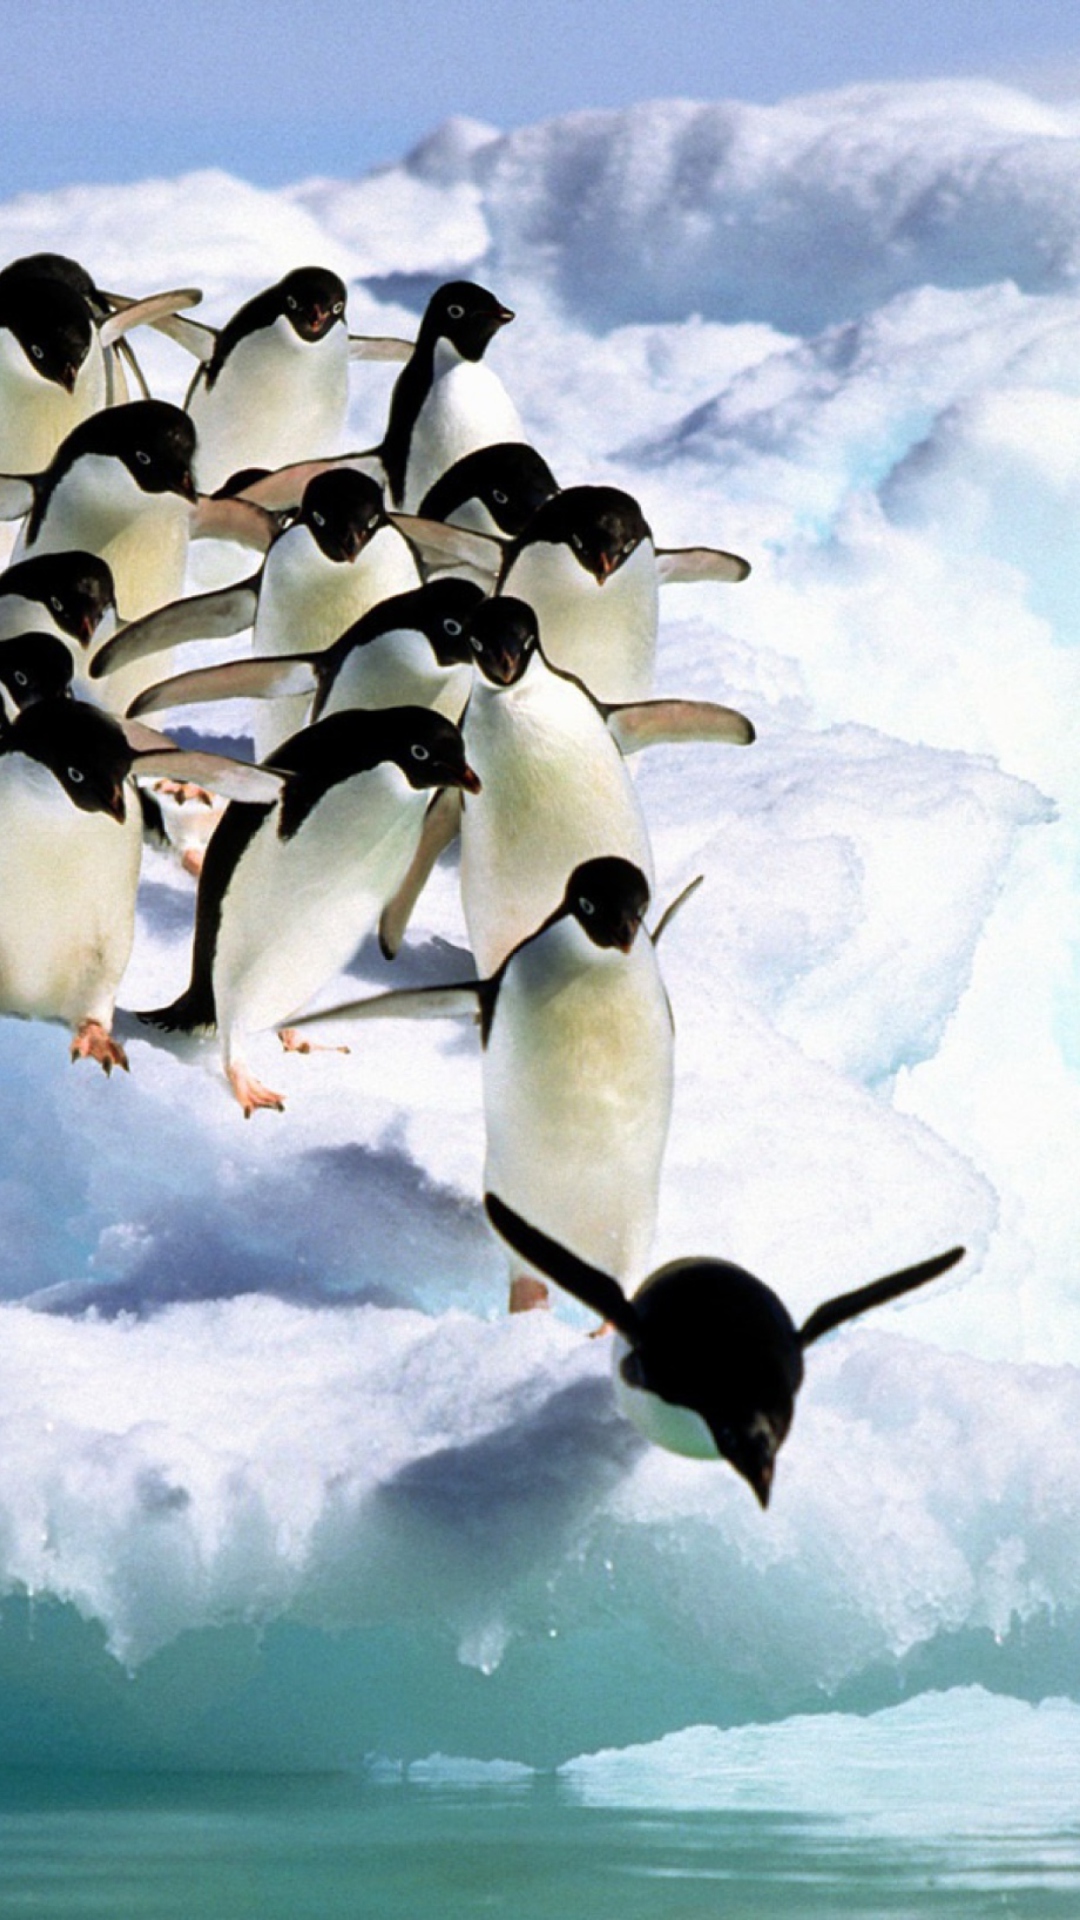 Penguins On An Iceberg wallpaper 1080x1920